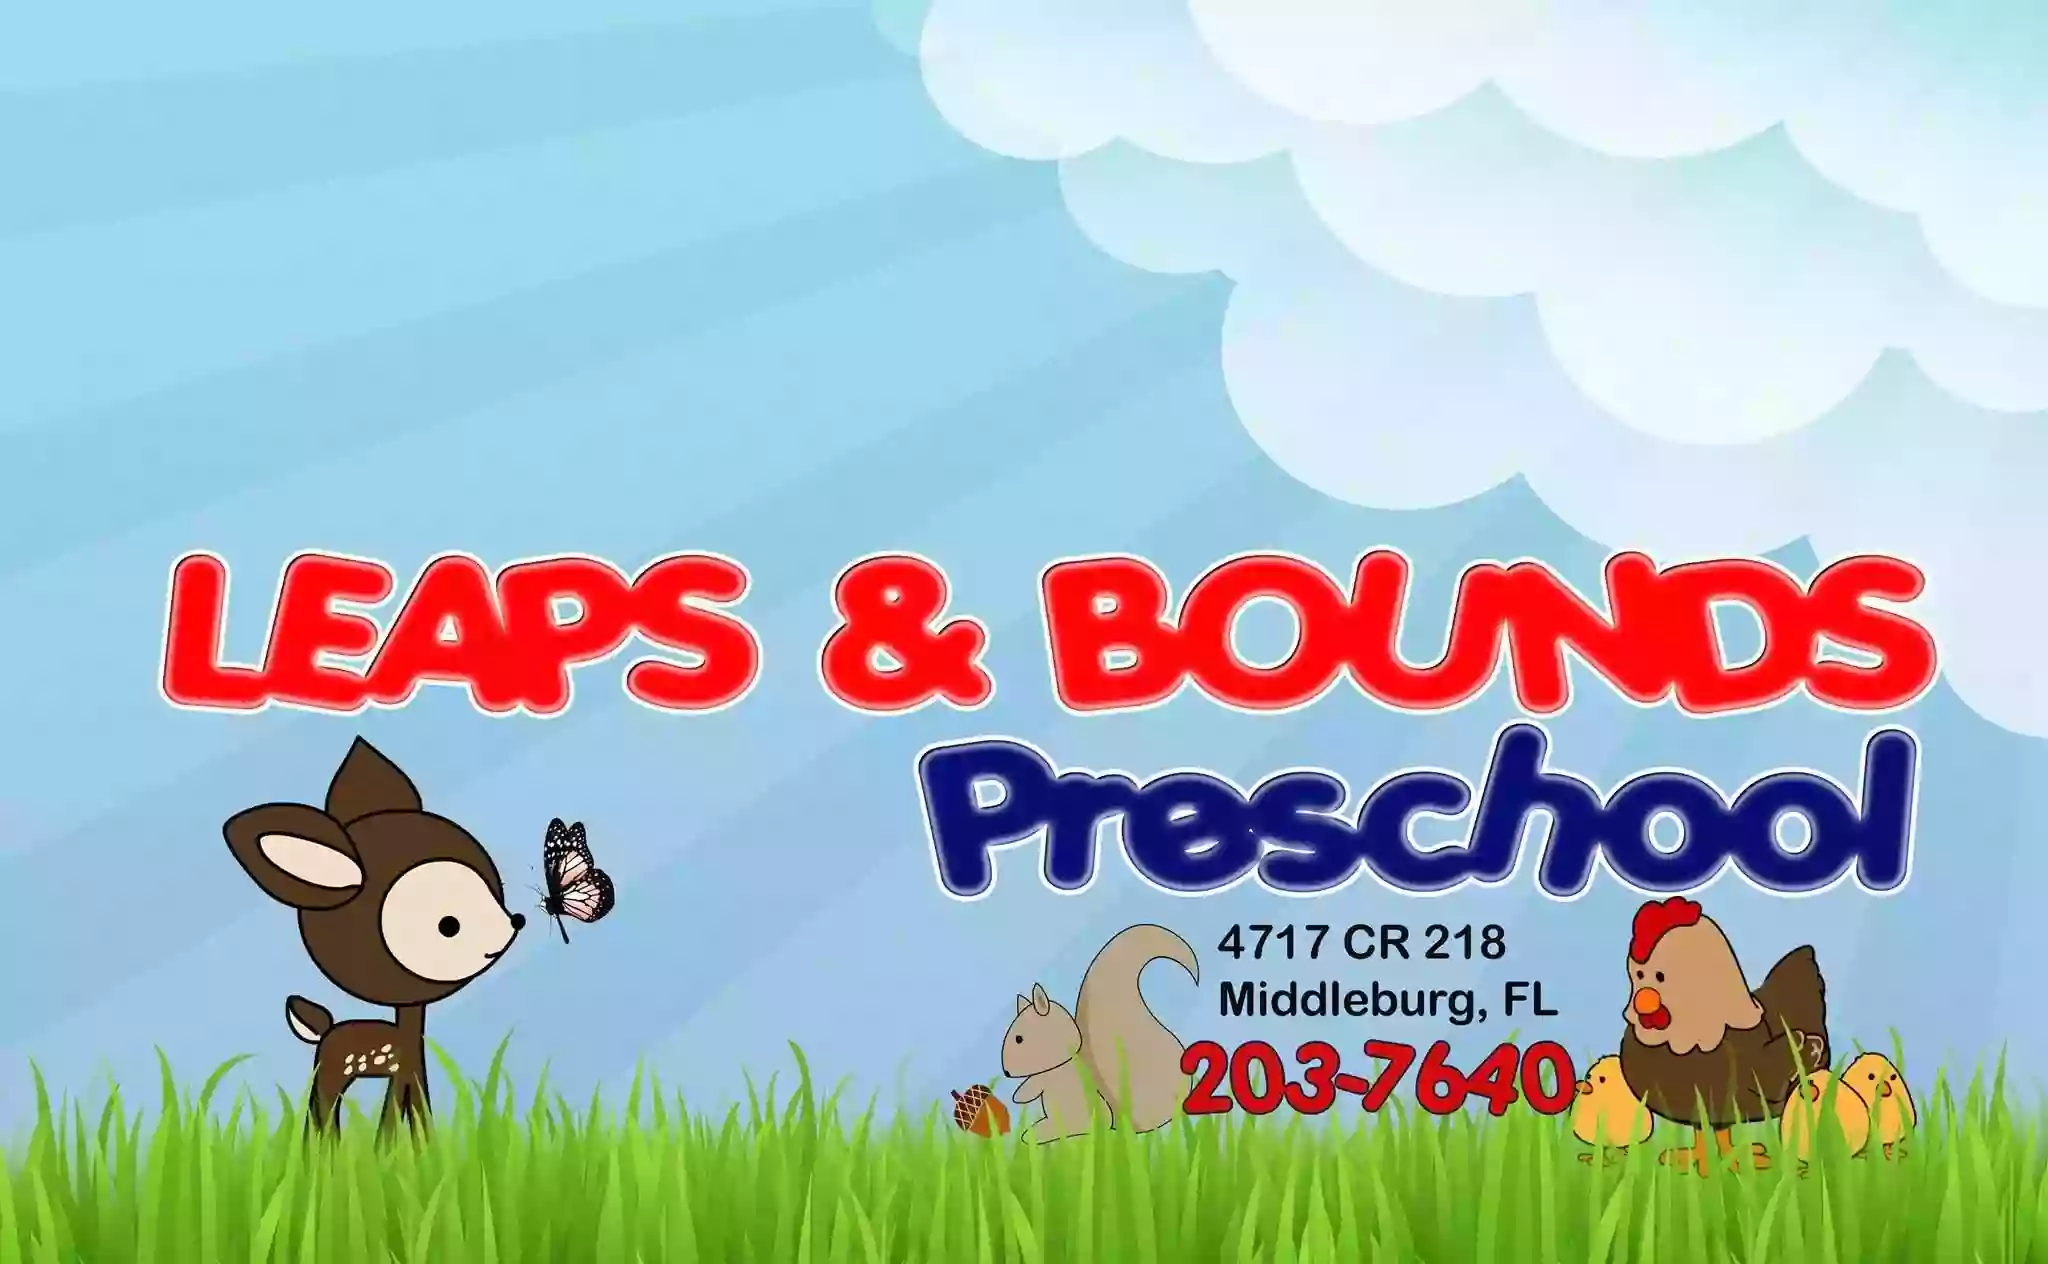 Leaps & Bounds Preschool